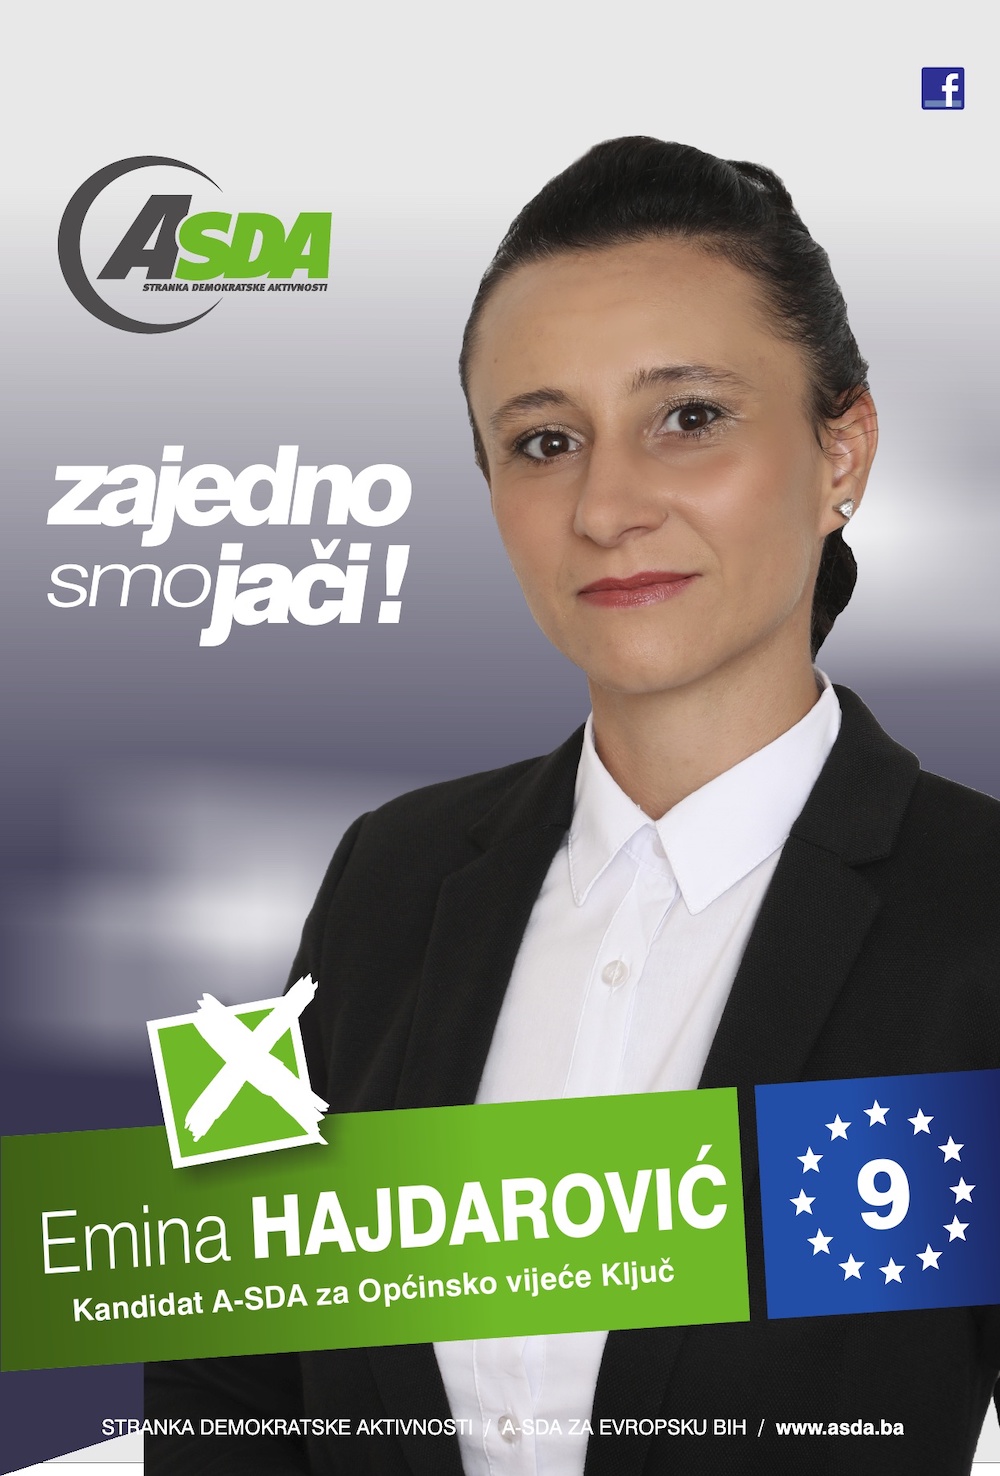 Emina Hajdarović